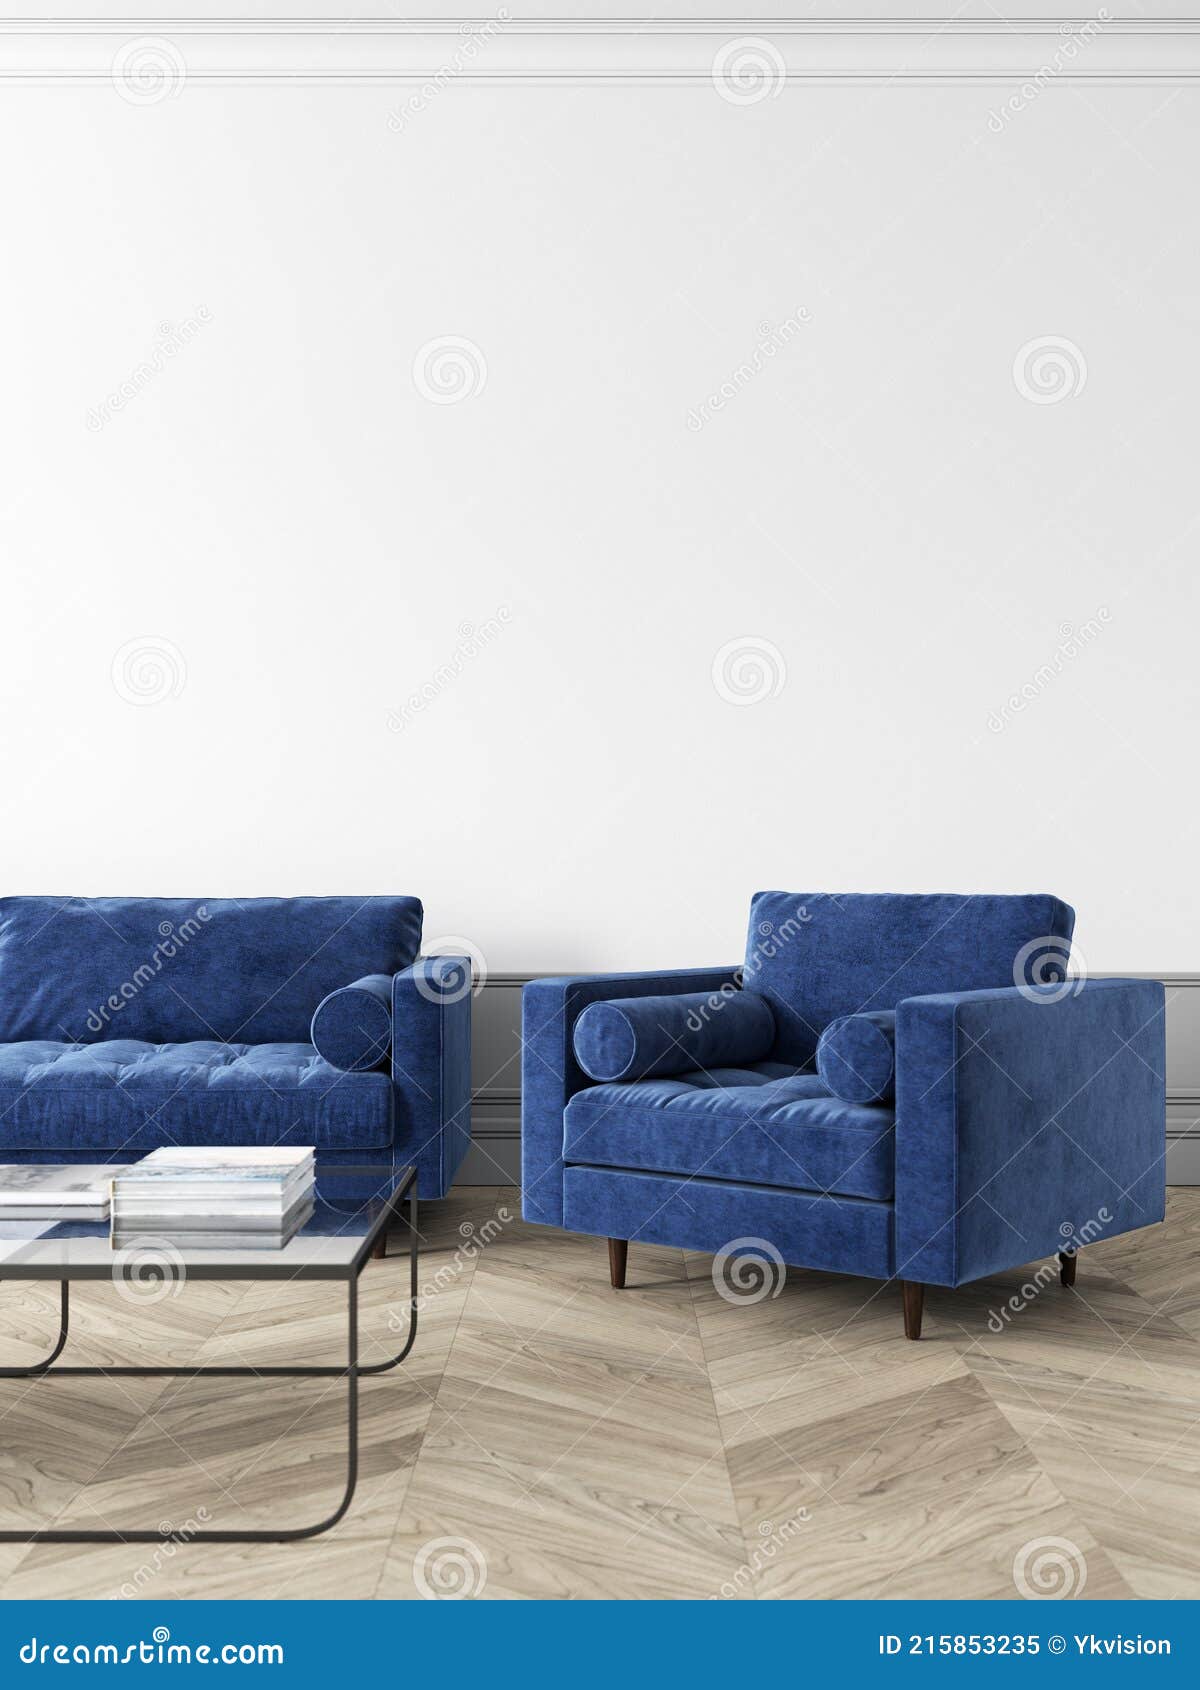 Contable Intentar Genuino Interior Moderno Blanco Con Sillón Y Sofá Muebles Azules. Stock de  ilustración - Ilustración de gris, butaca: 215853235